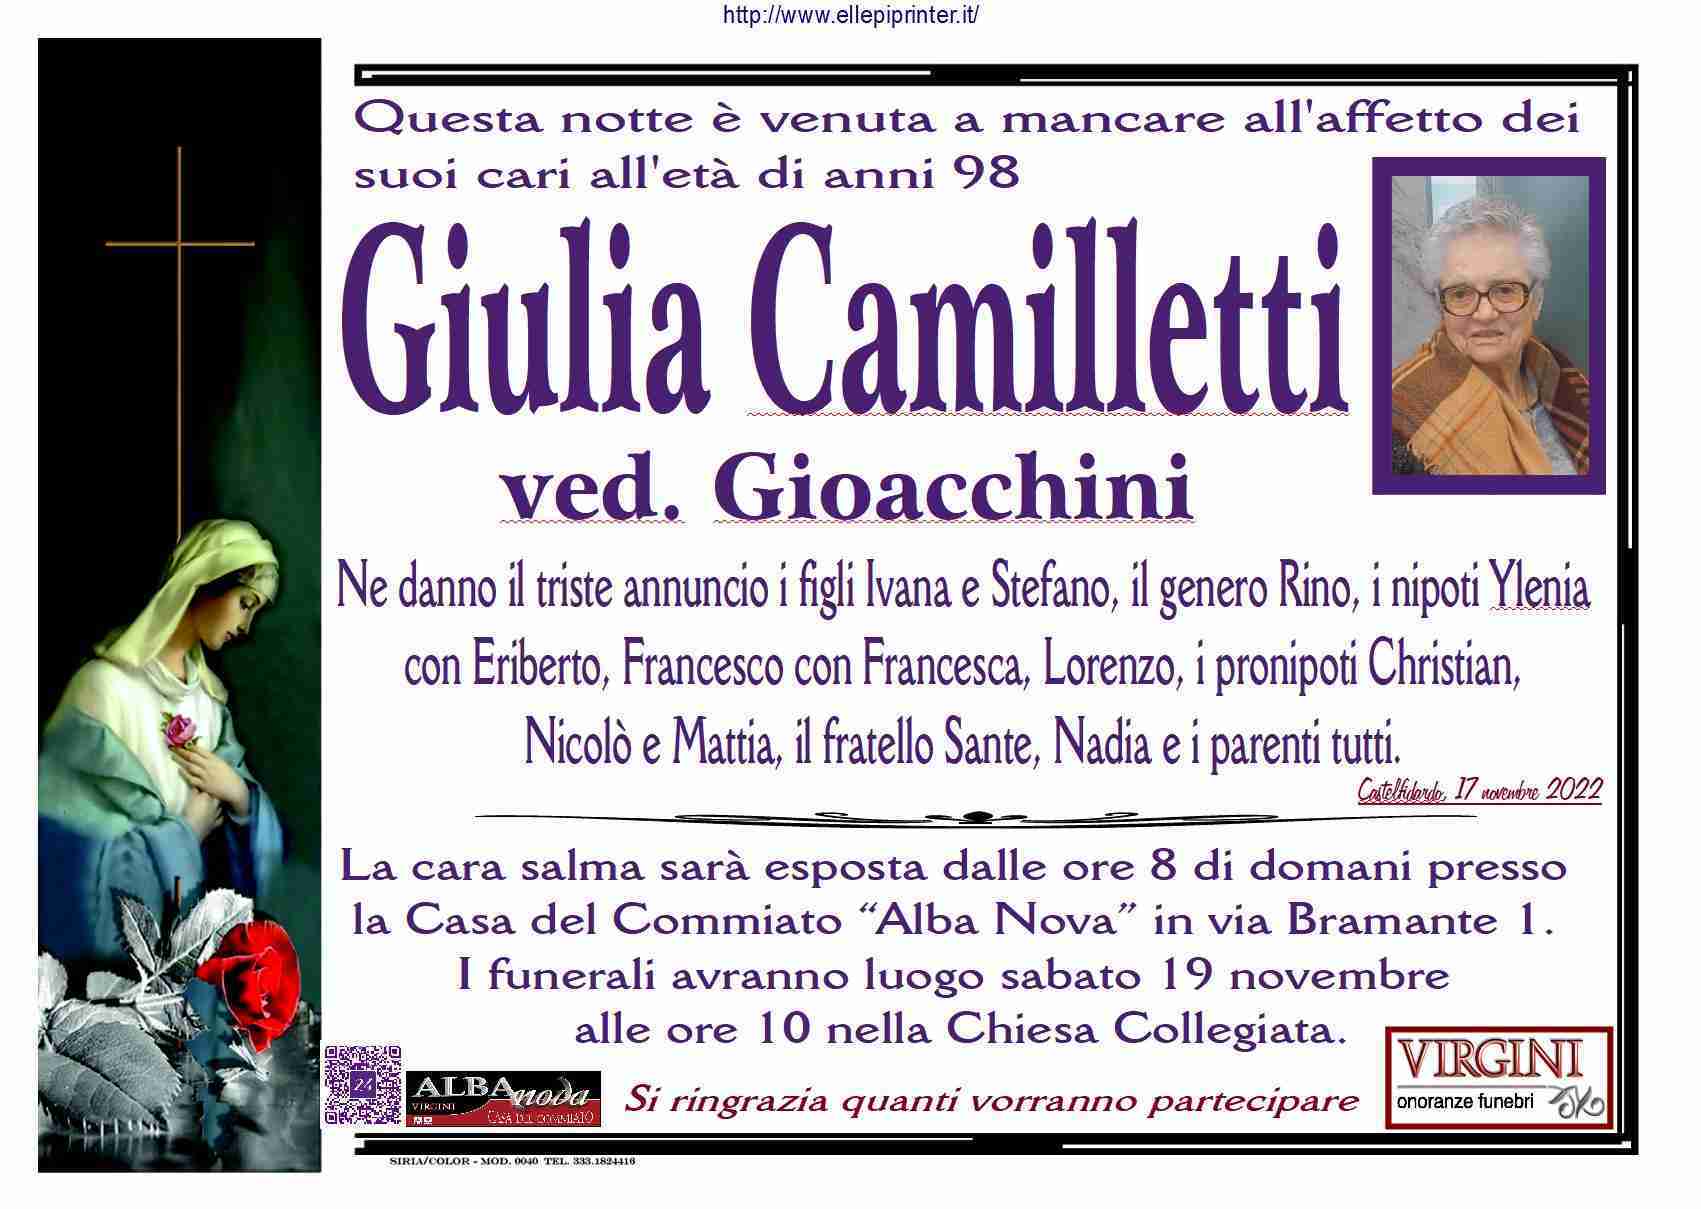 Giulia Camilletti